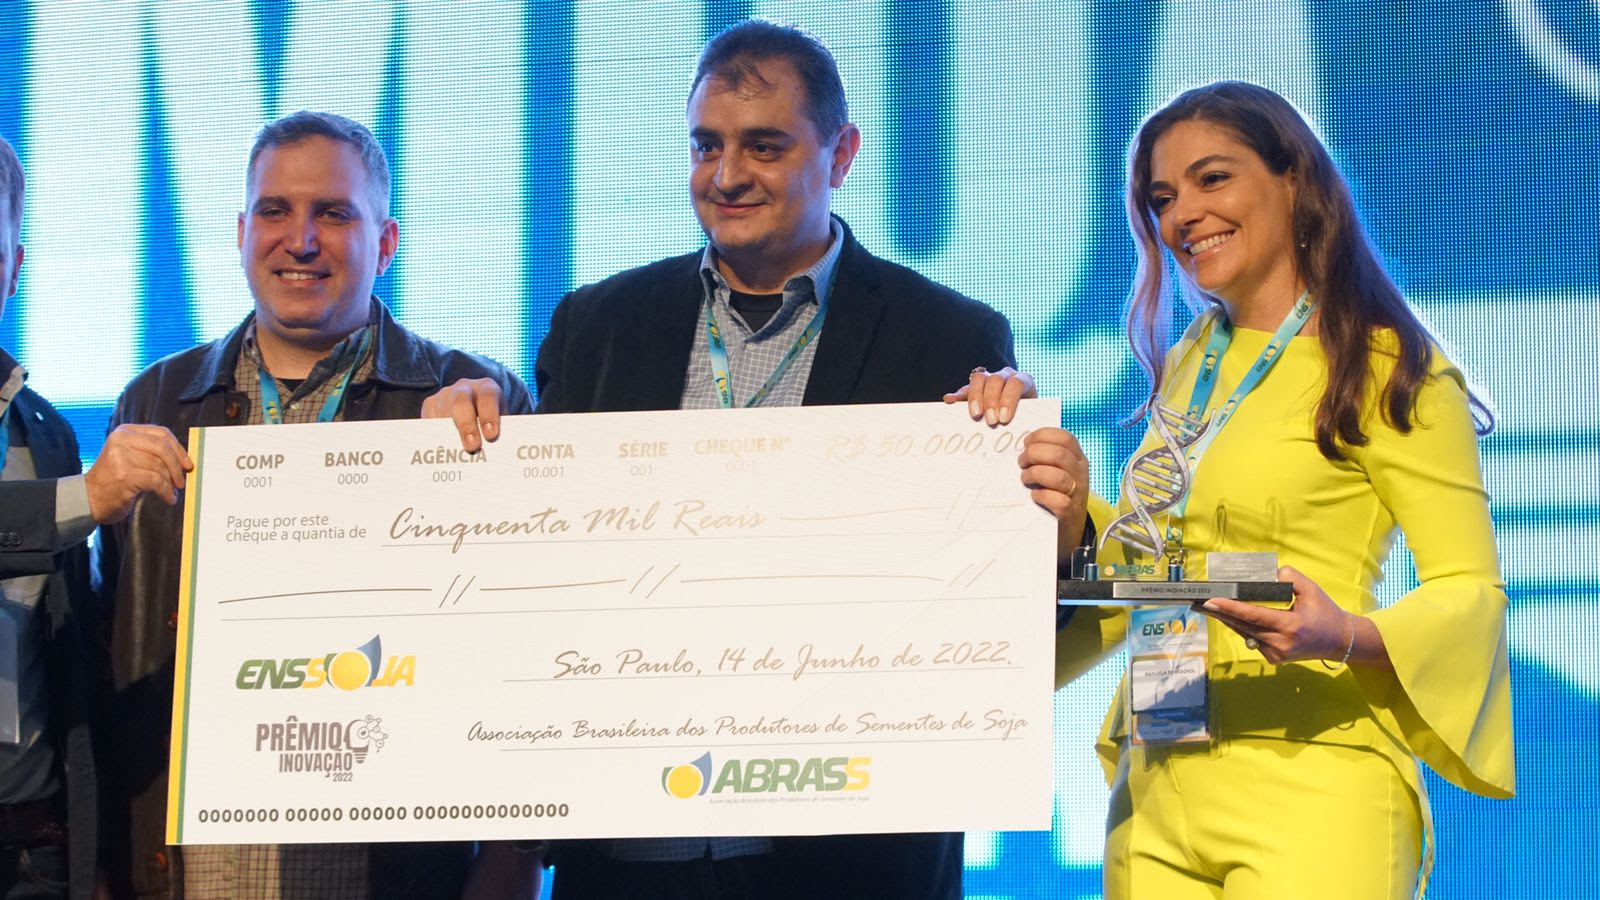 Vencedor é anunciado no ENSSOJA e recebe o prêmio de R$ 50 mil, incentivo à contribuição a toda a cadeia produtiva de soja no Brasil. - Foto: Divulgação